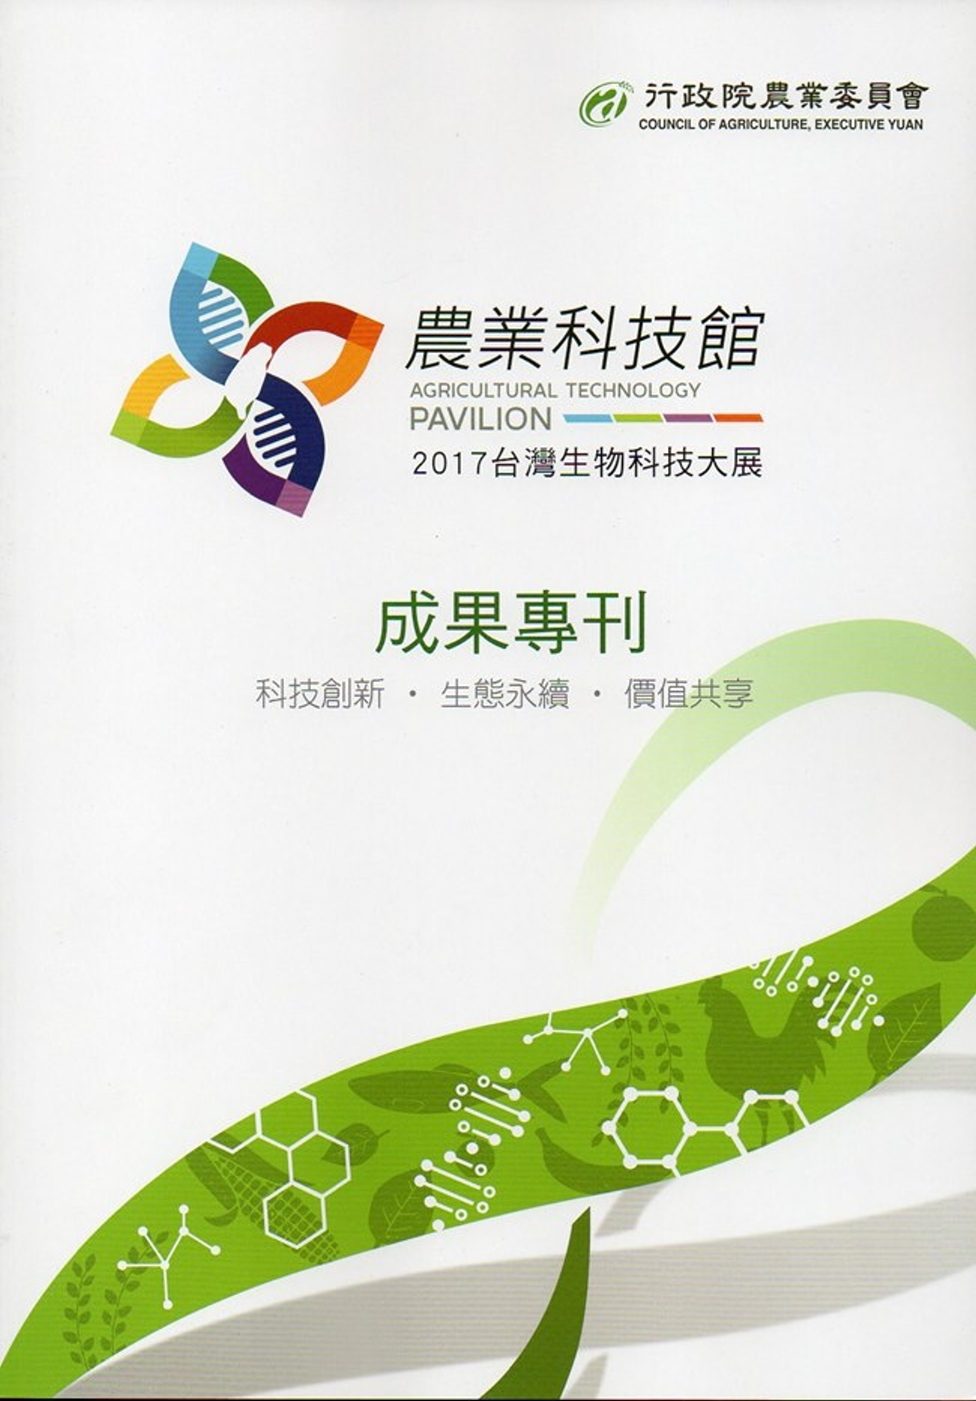 2017台灣生物科技大展農業科技館